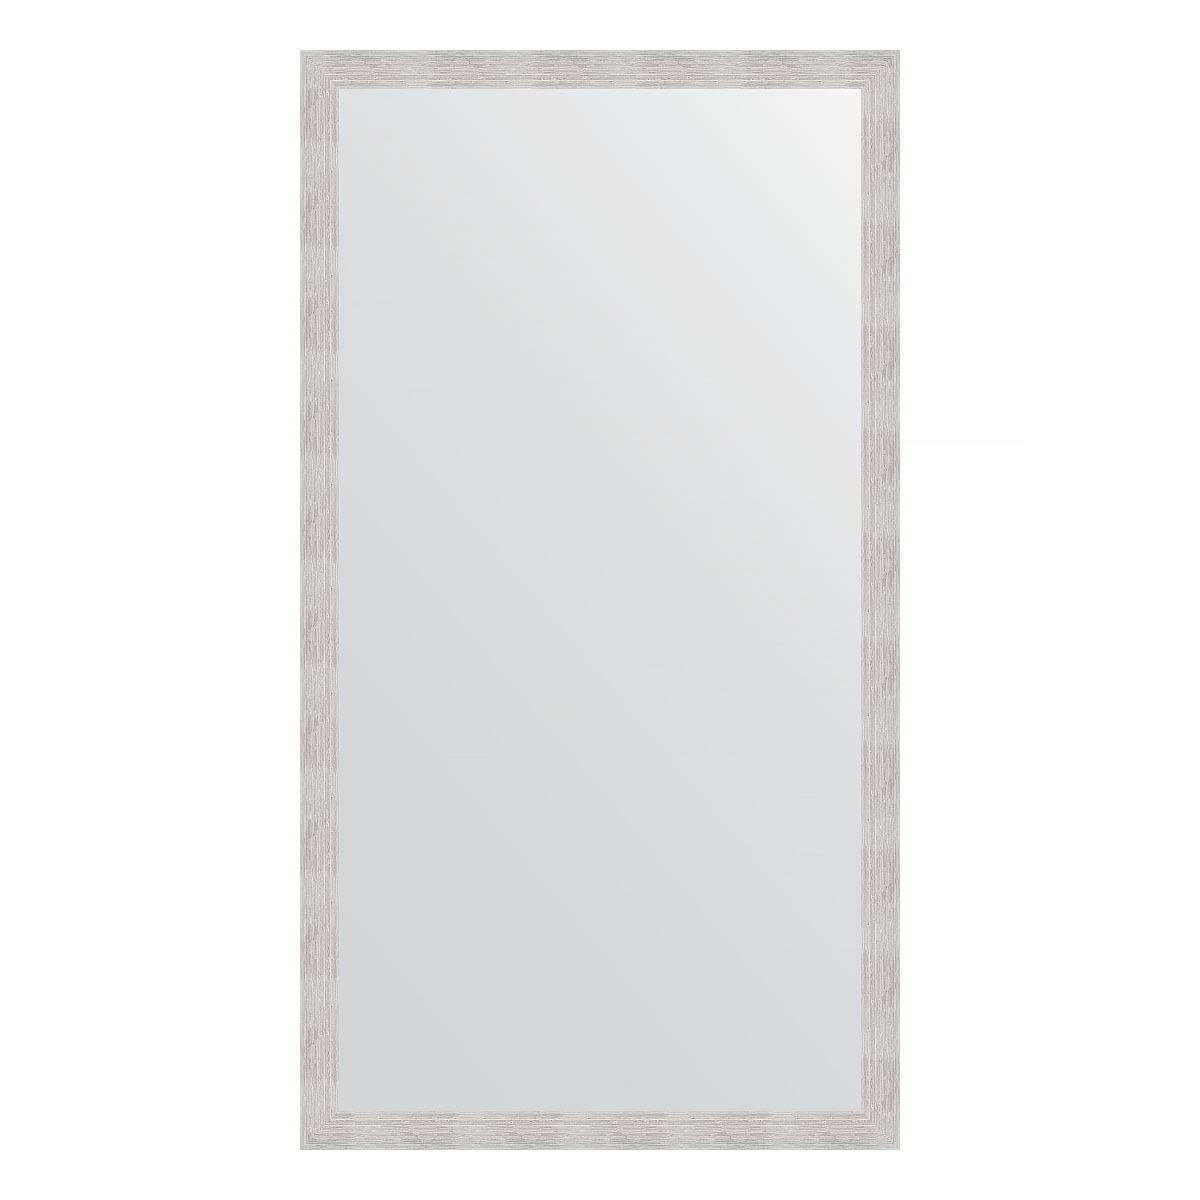 Зеркало напольное в багетной раме Evoform серебряный дождь 70 мм 108x197 см 23989